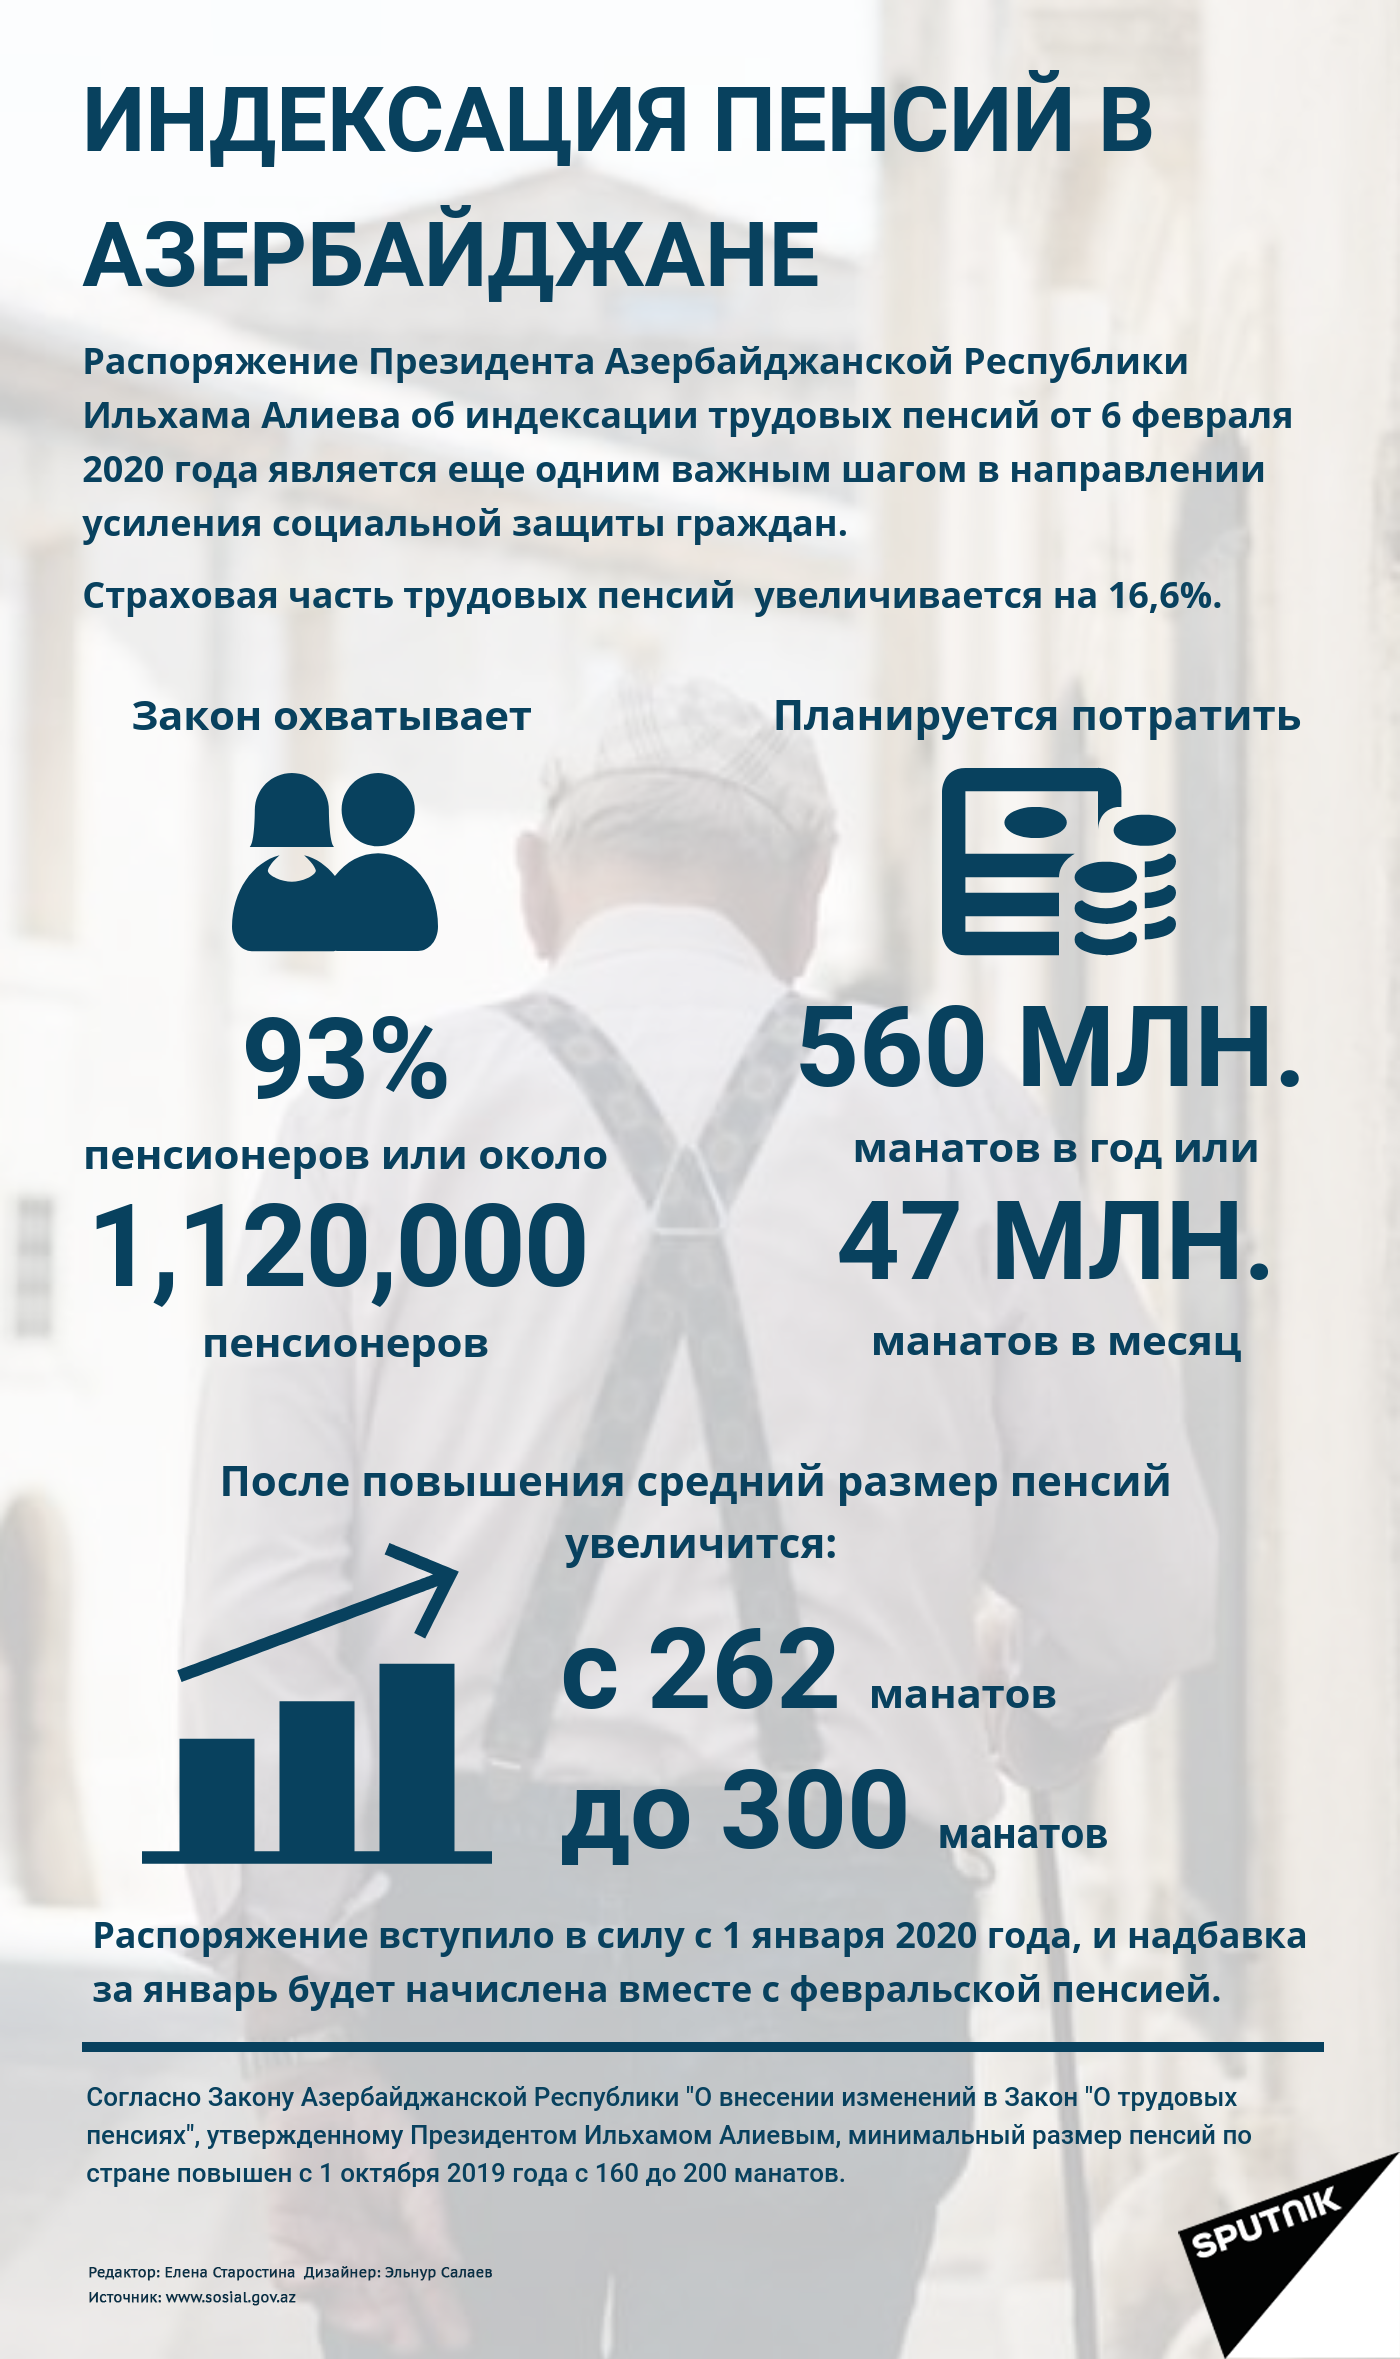 Инфографика: Индексация пенсии в Азербайджане - Sputnik Азербайджан